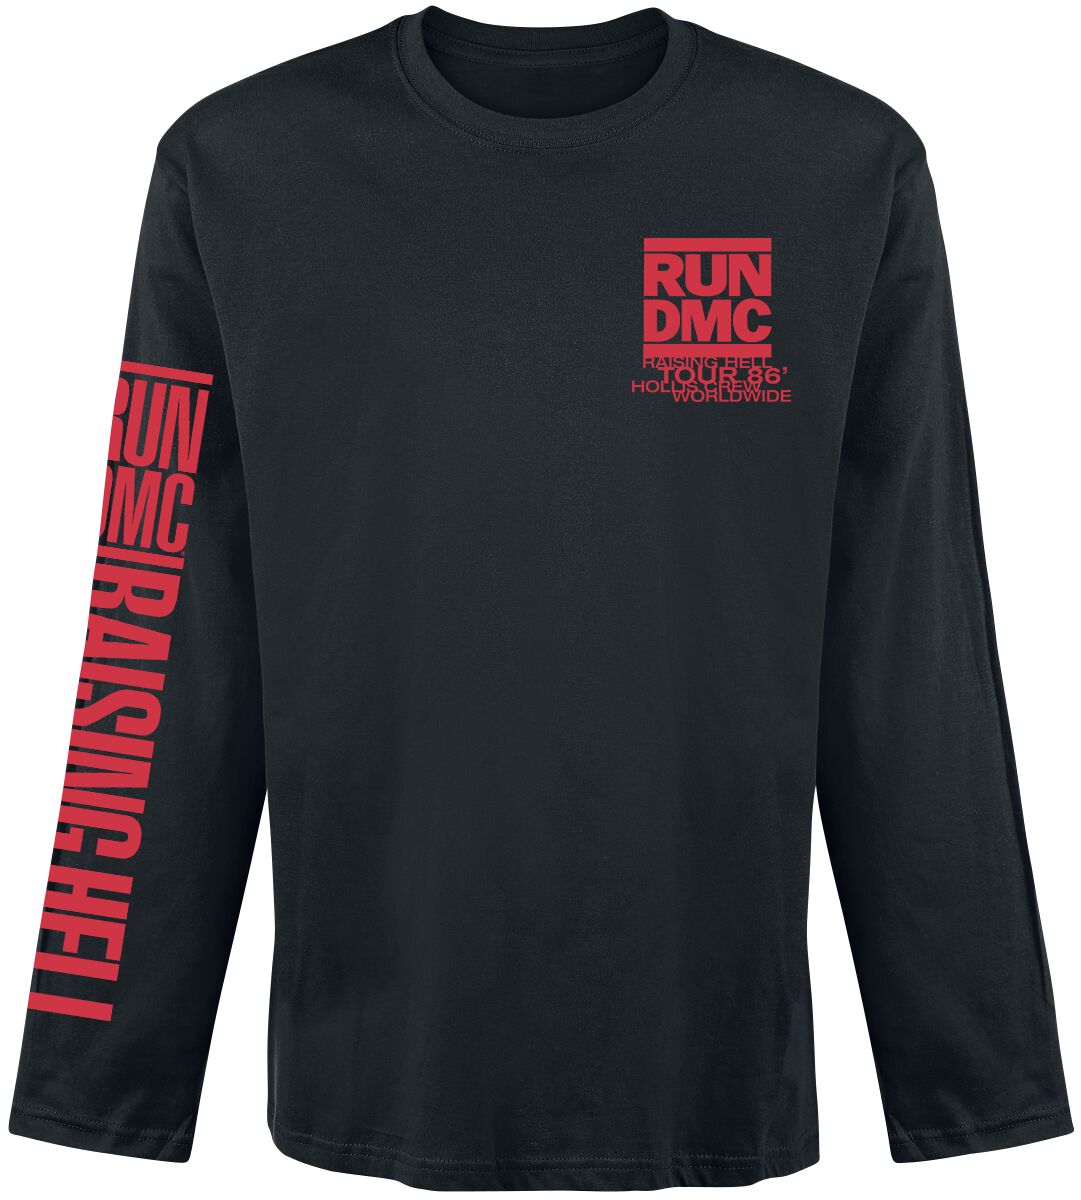 Run DMC Langarmshirt - Raising Hell Tour 86 - S bis XXL - für Männer - Größe S - schwarz  - Lizenziertes Merchandise!